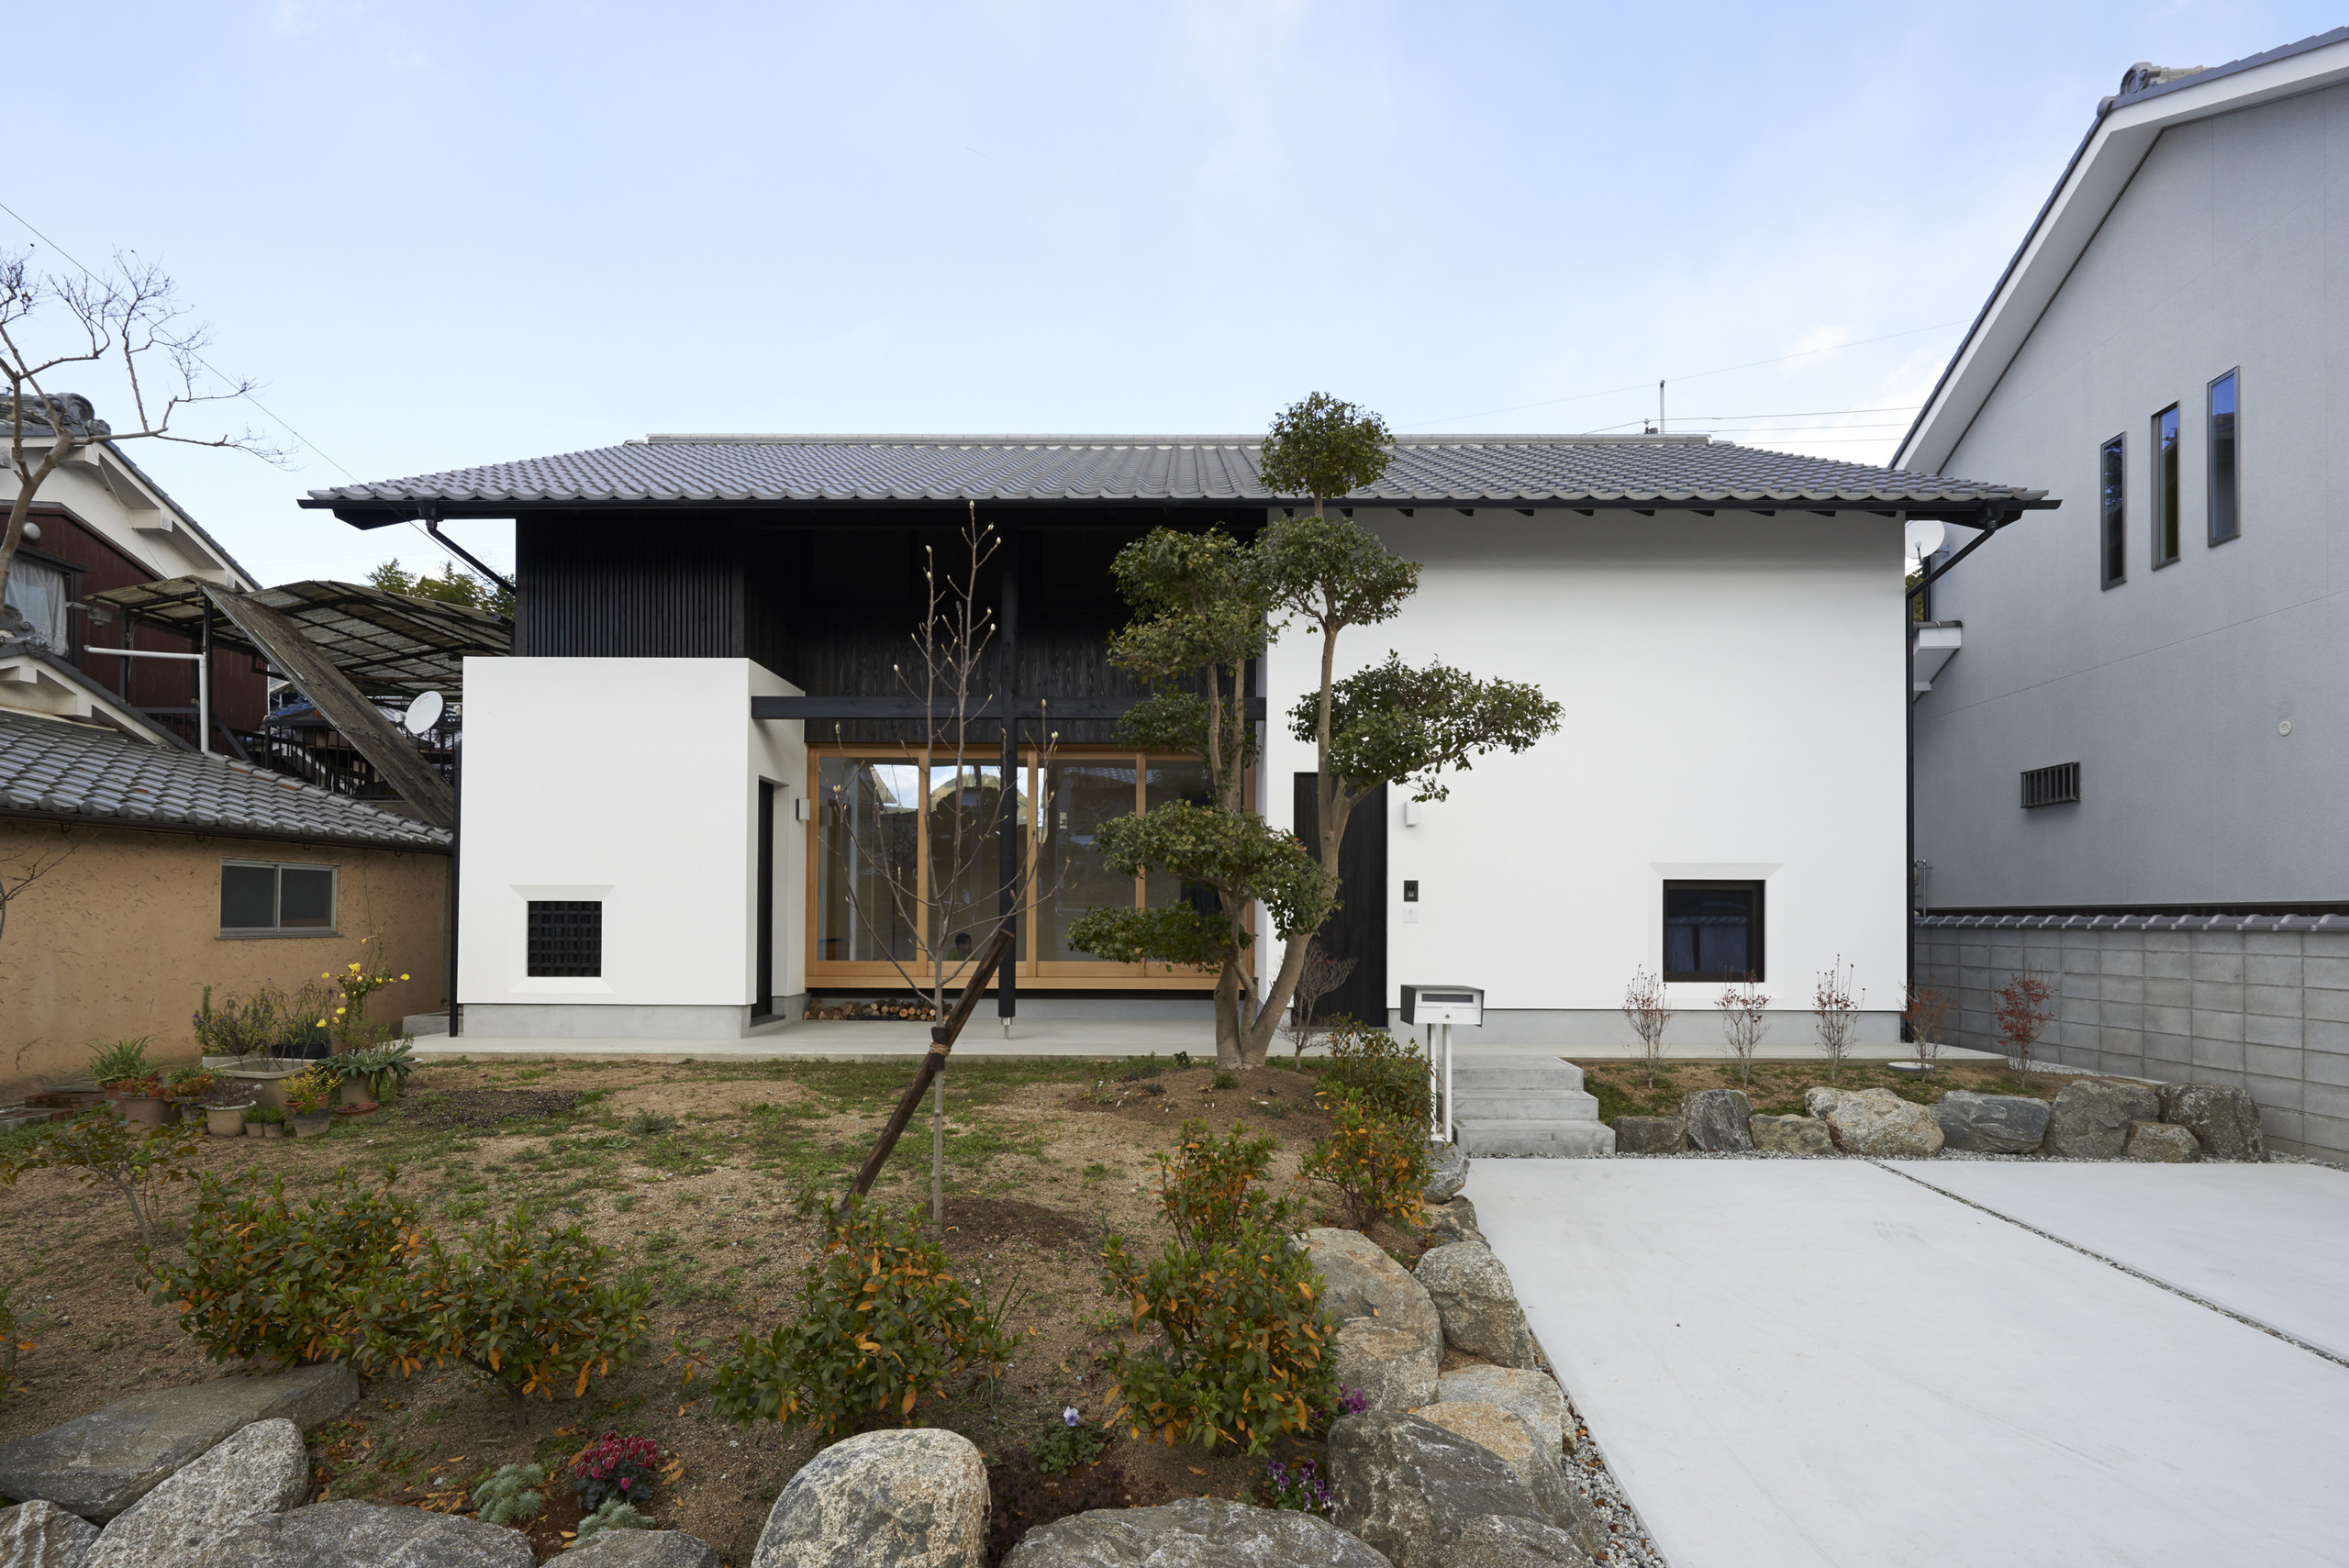 明日香の家 奈良 歴史ある地区に建つ現代和風の家 Atelier Sumika 建築家 工務店との家づくりを無料でサポート